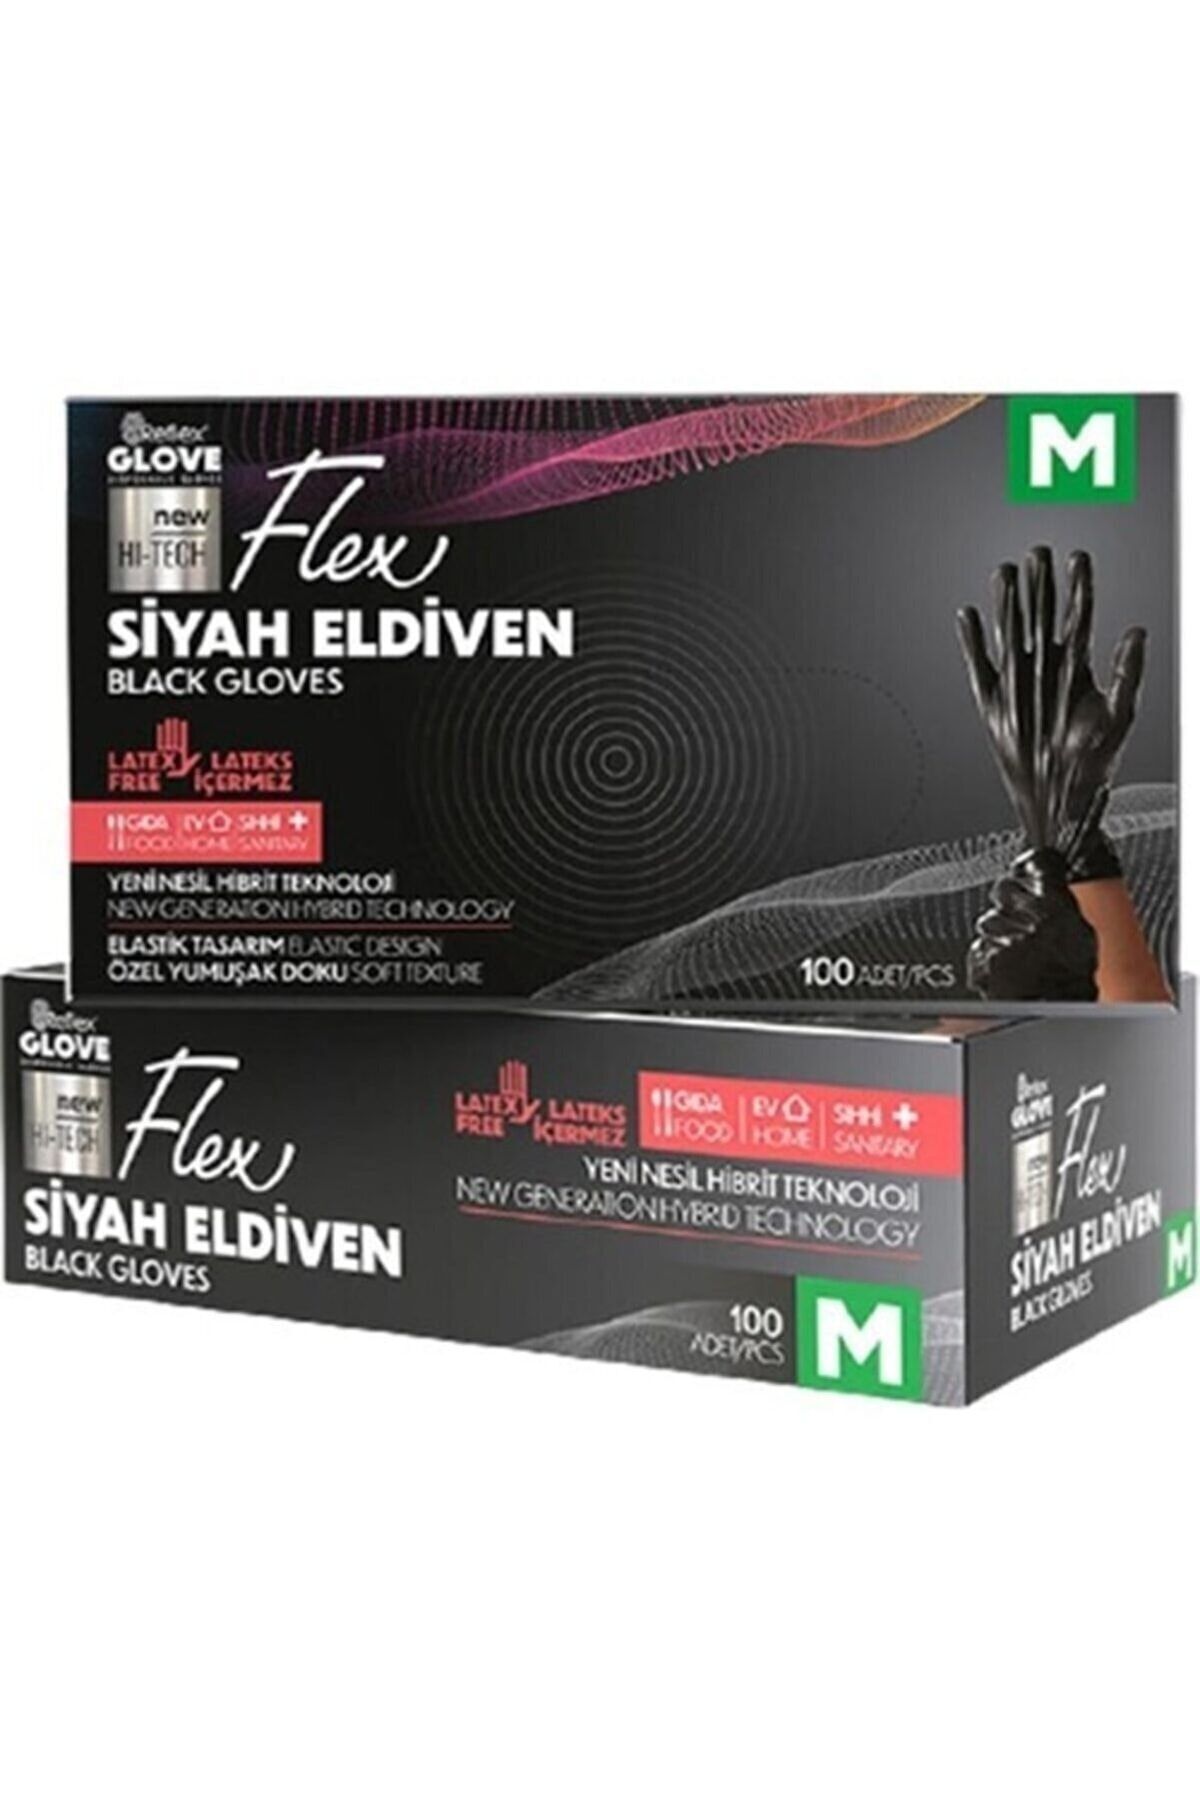 Reflex Flex Eldiven Flex Glove Pudrasız Latex Değildir 100'lü Paket M Beden